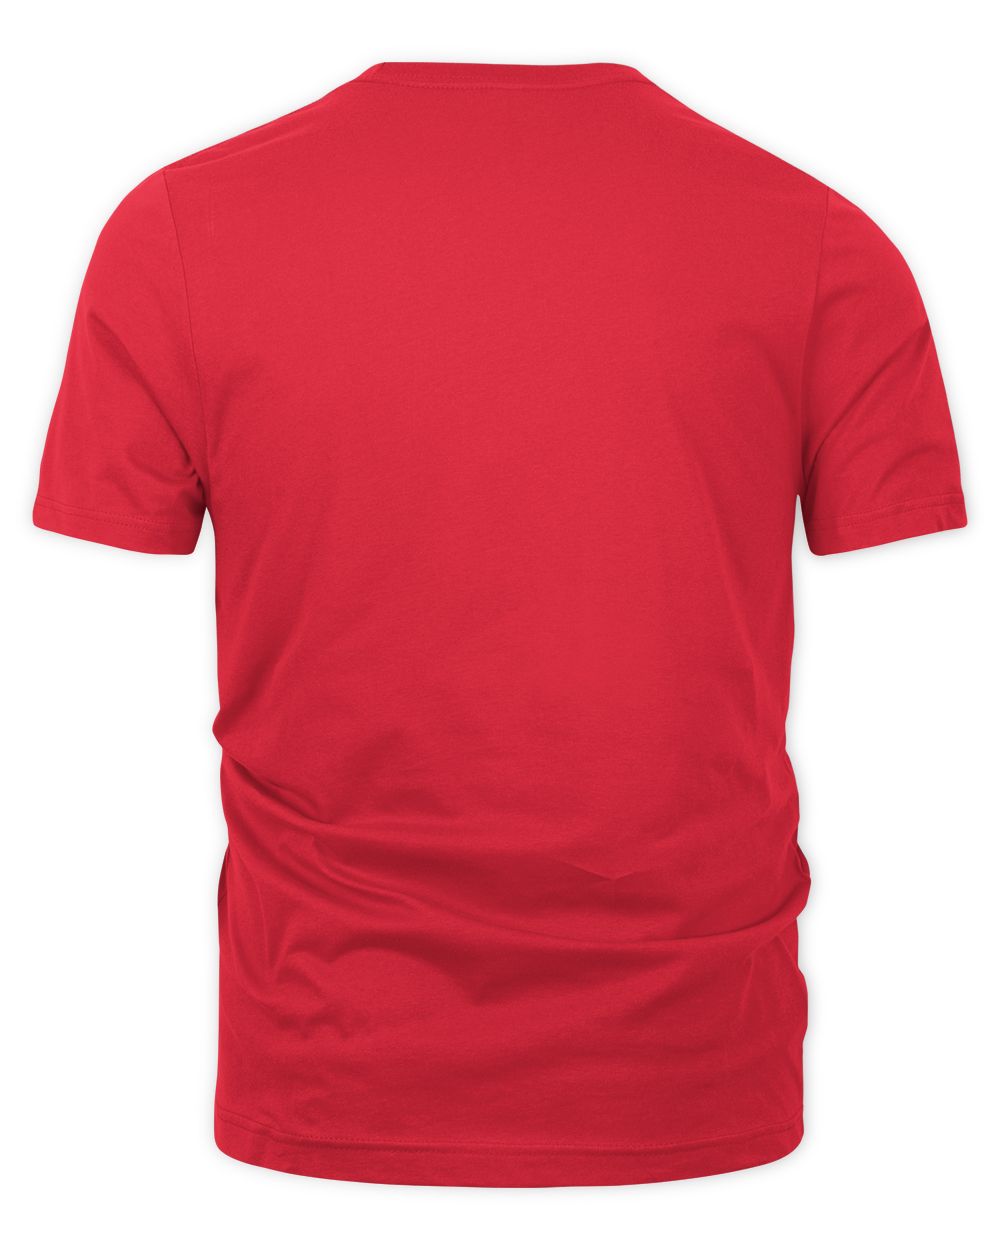 Jellybean Merch Rocks the House Shirt Unisex Premium T-Shirt red 